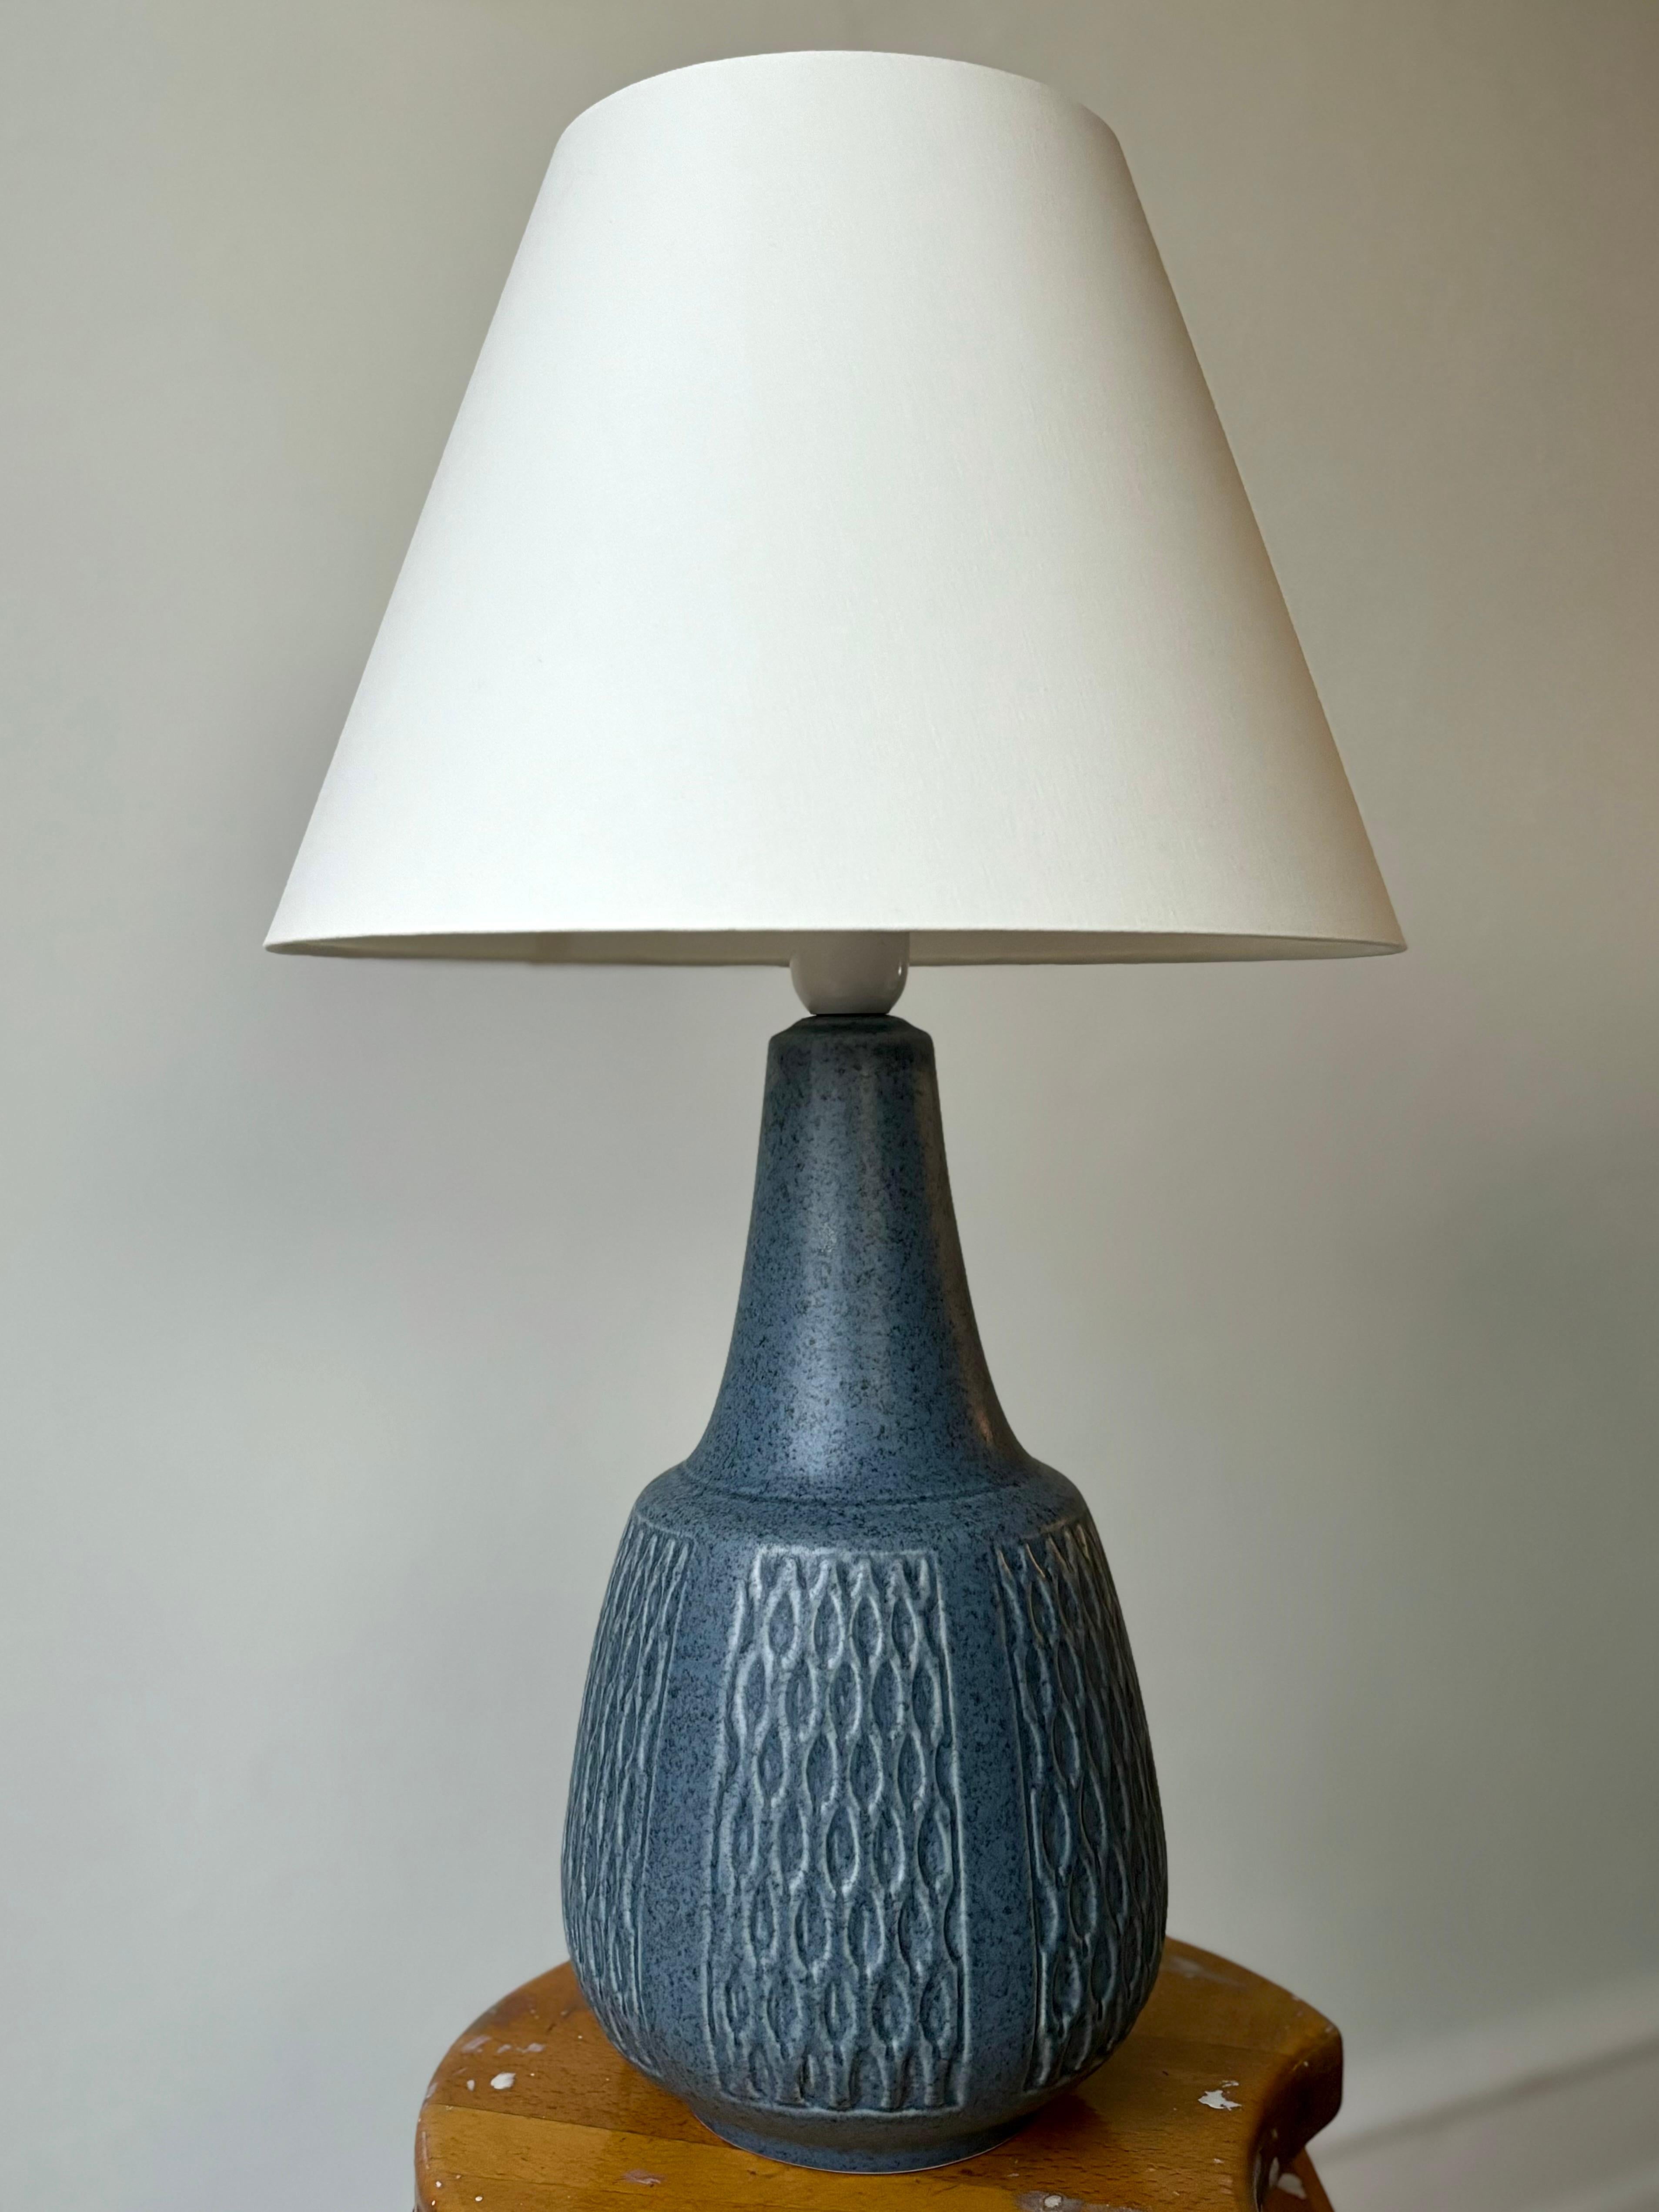 Lampe de table en céramique bleu clair poussiéreuse fabriquée à la main par l'artiste céramiste danois Einar Johansen dans les années 1960. Motif graphique en relief autour de la panse avec glaçure mate mouchetée. Signé et numéroté sous la base.